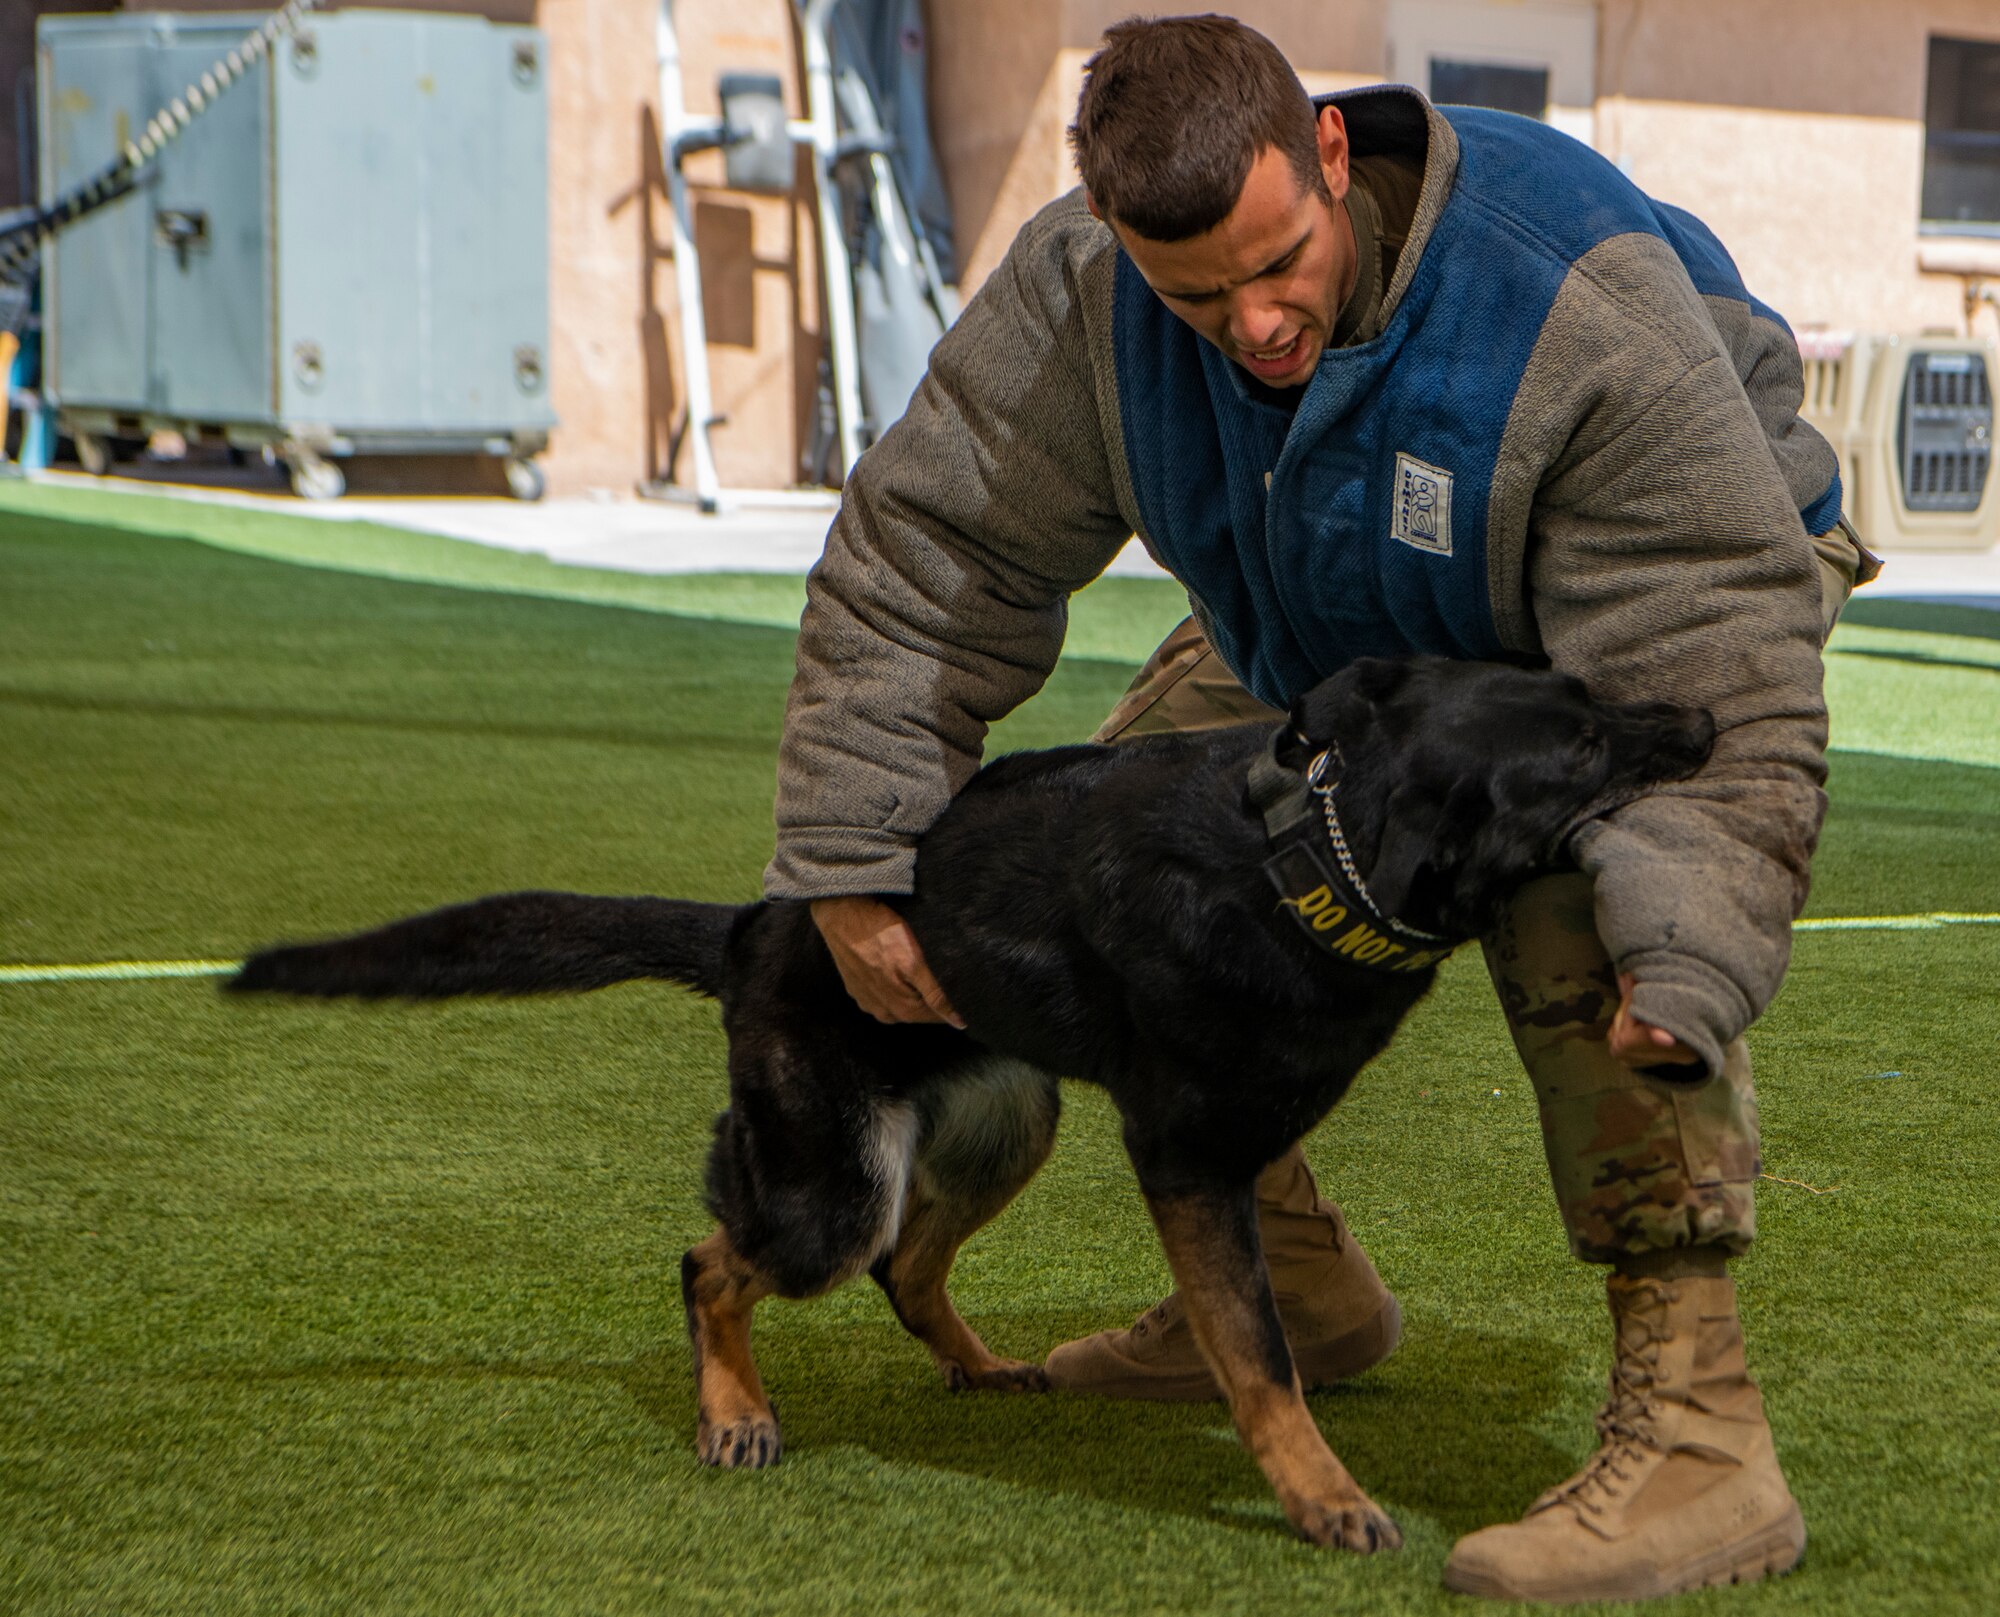 Dog bites Airman in training exercise.